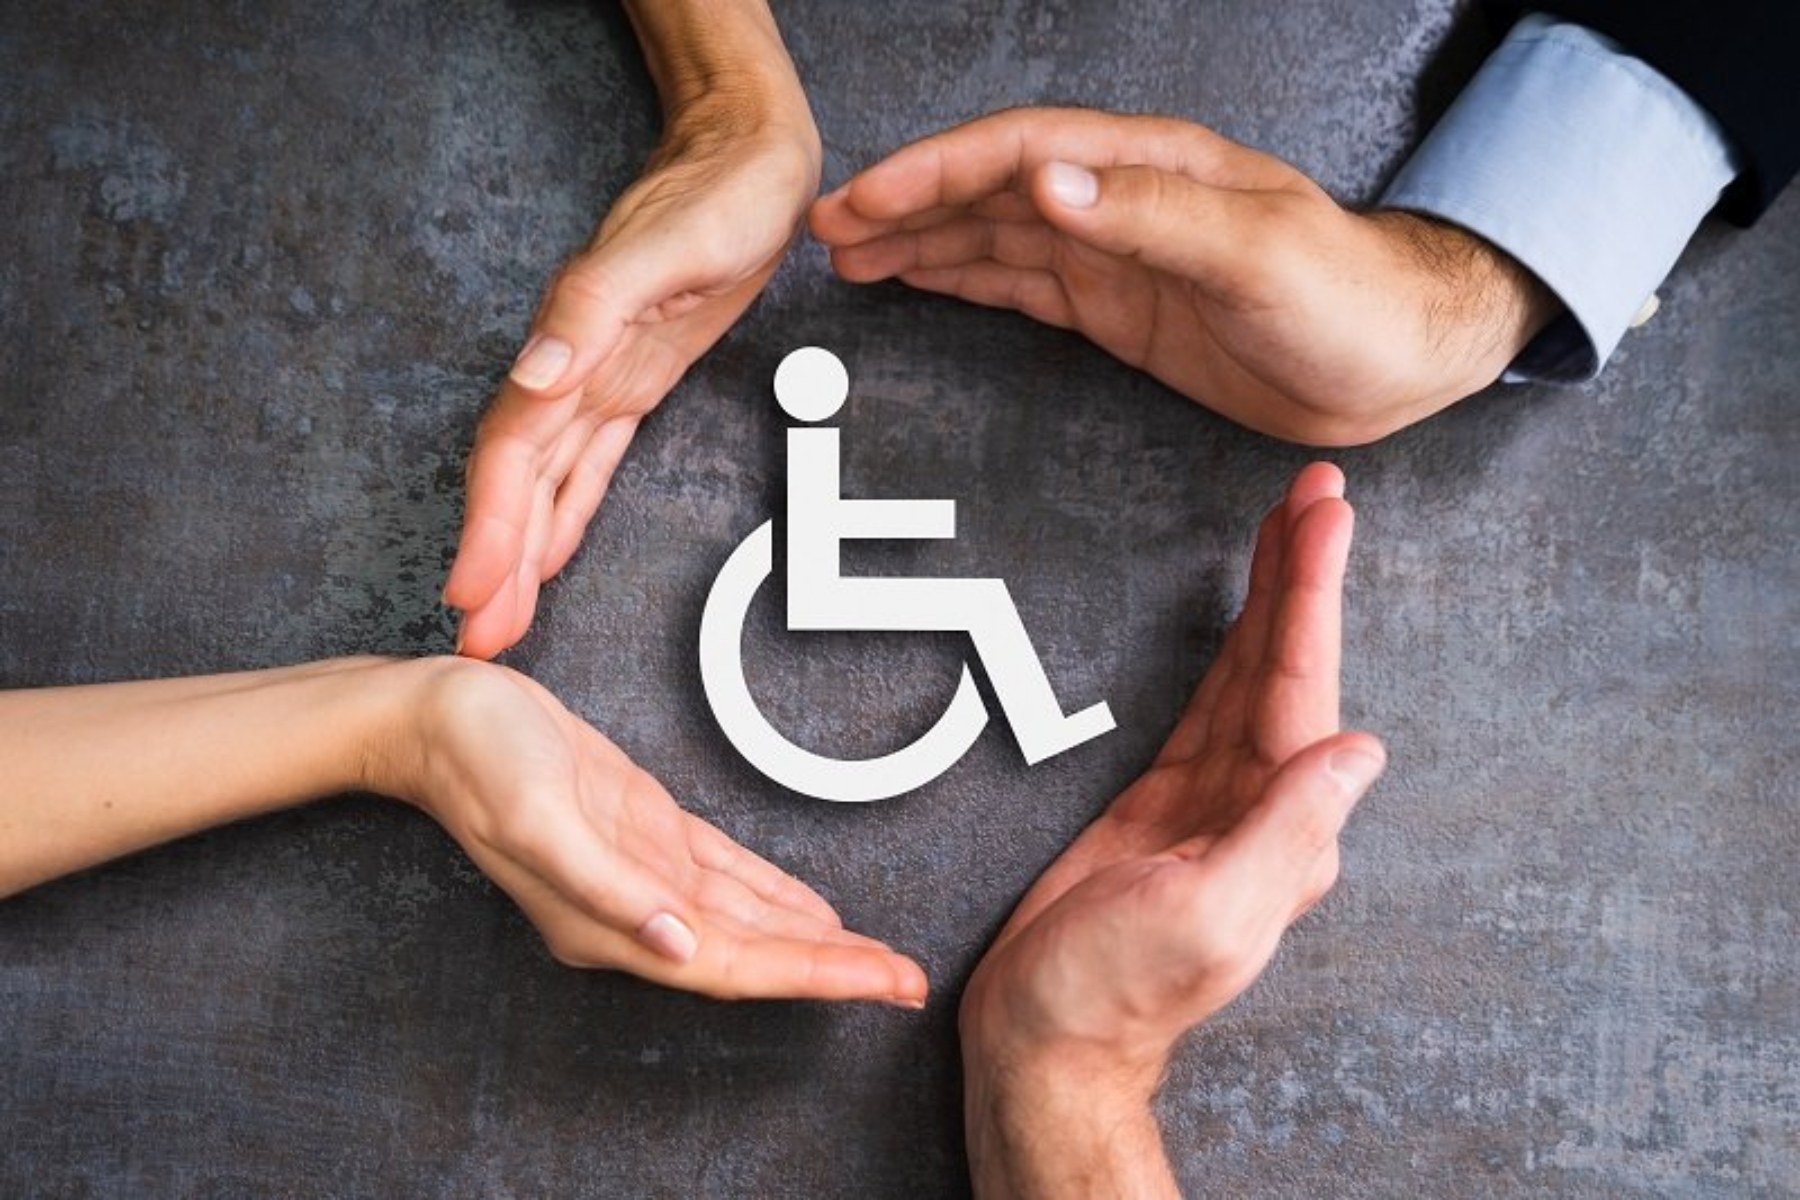 Μέτρα και προτάσεις στον Κ. Χατζηδάκη για φορολογικά ζητήματα που αφορούν άτομα με αναπηρία, χρόνιες παθήσεις, οικογένειες